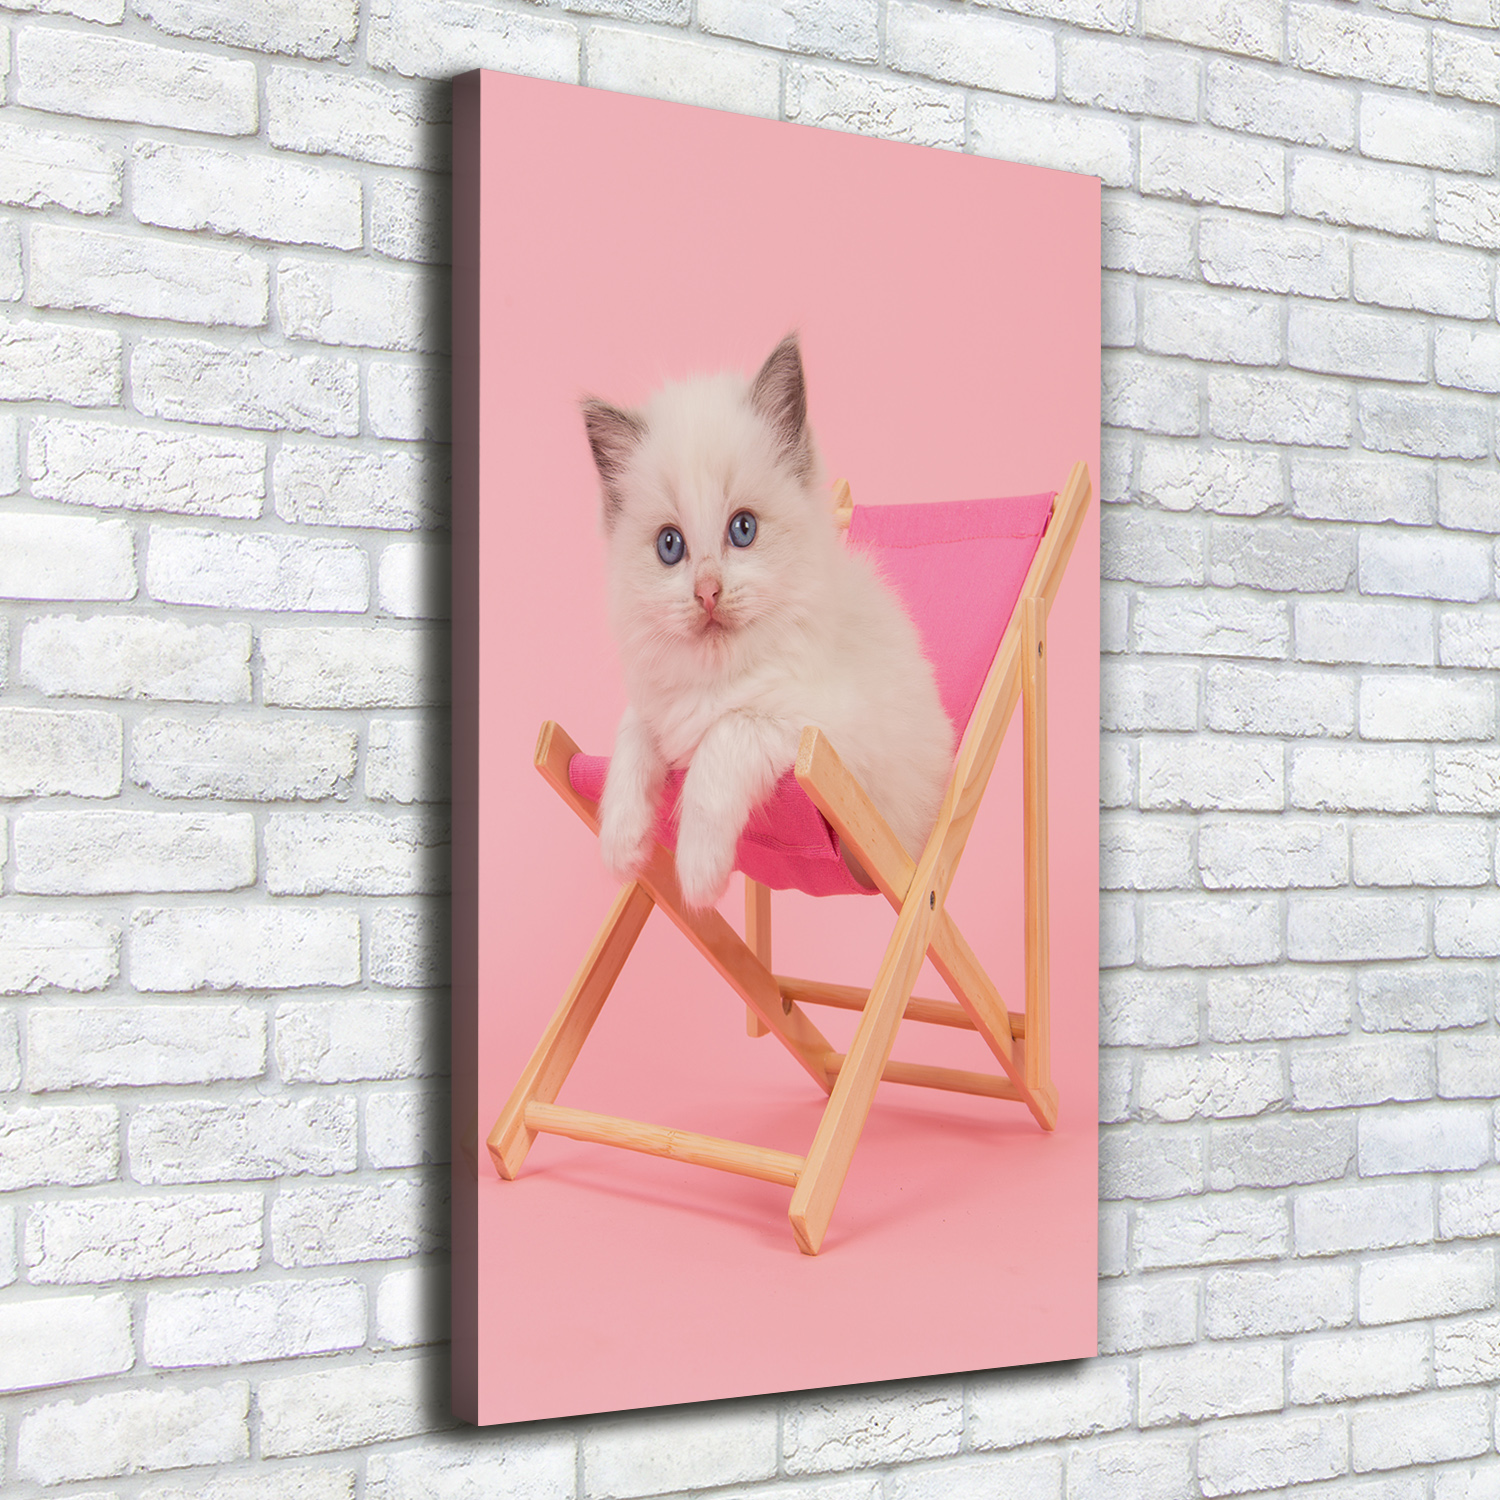 Leinwand-Bild Kunstdruck Hochformat 50x100 Bilder Katze Liegestuhl